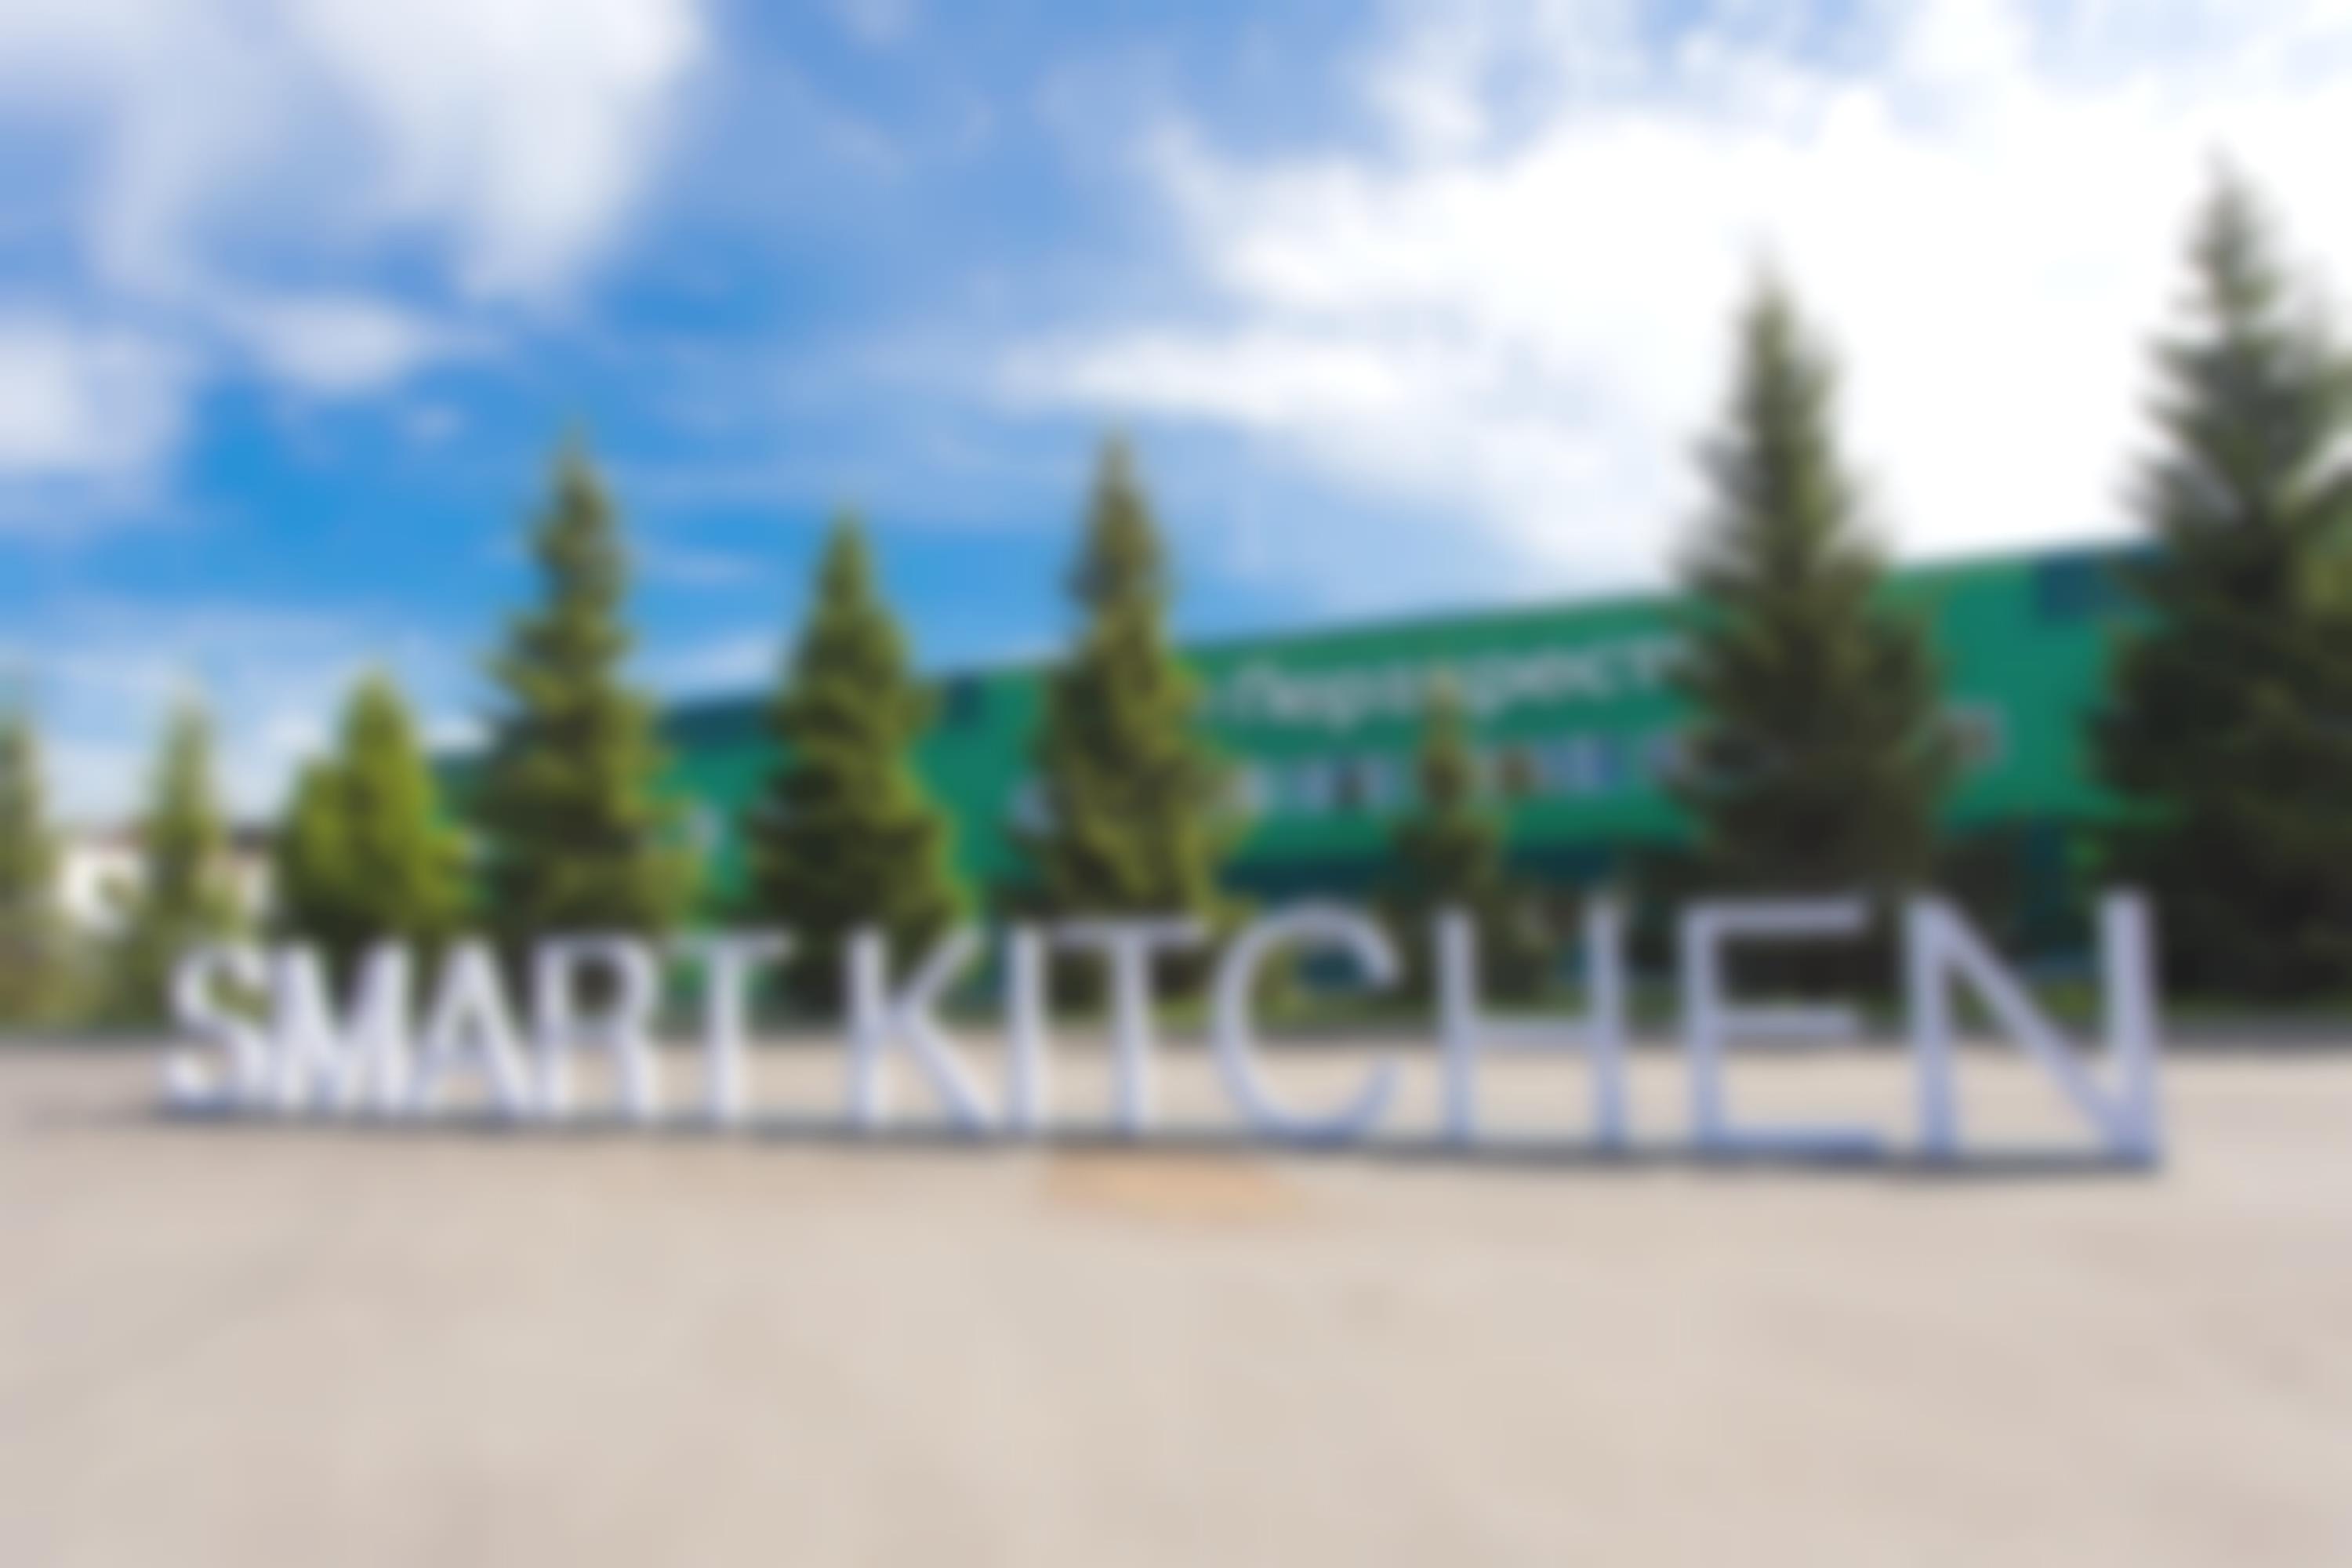 Smart kitchen